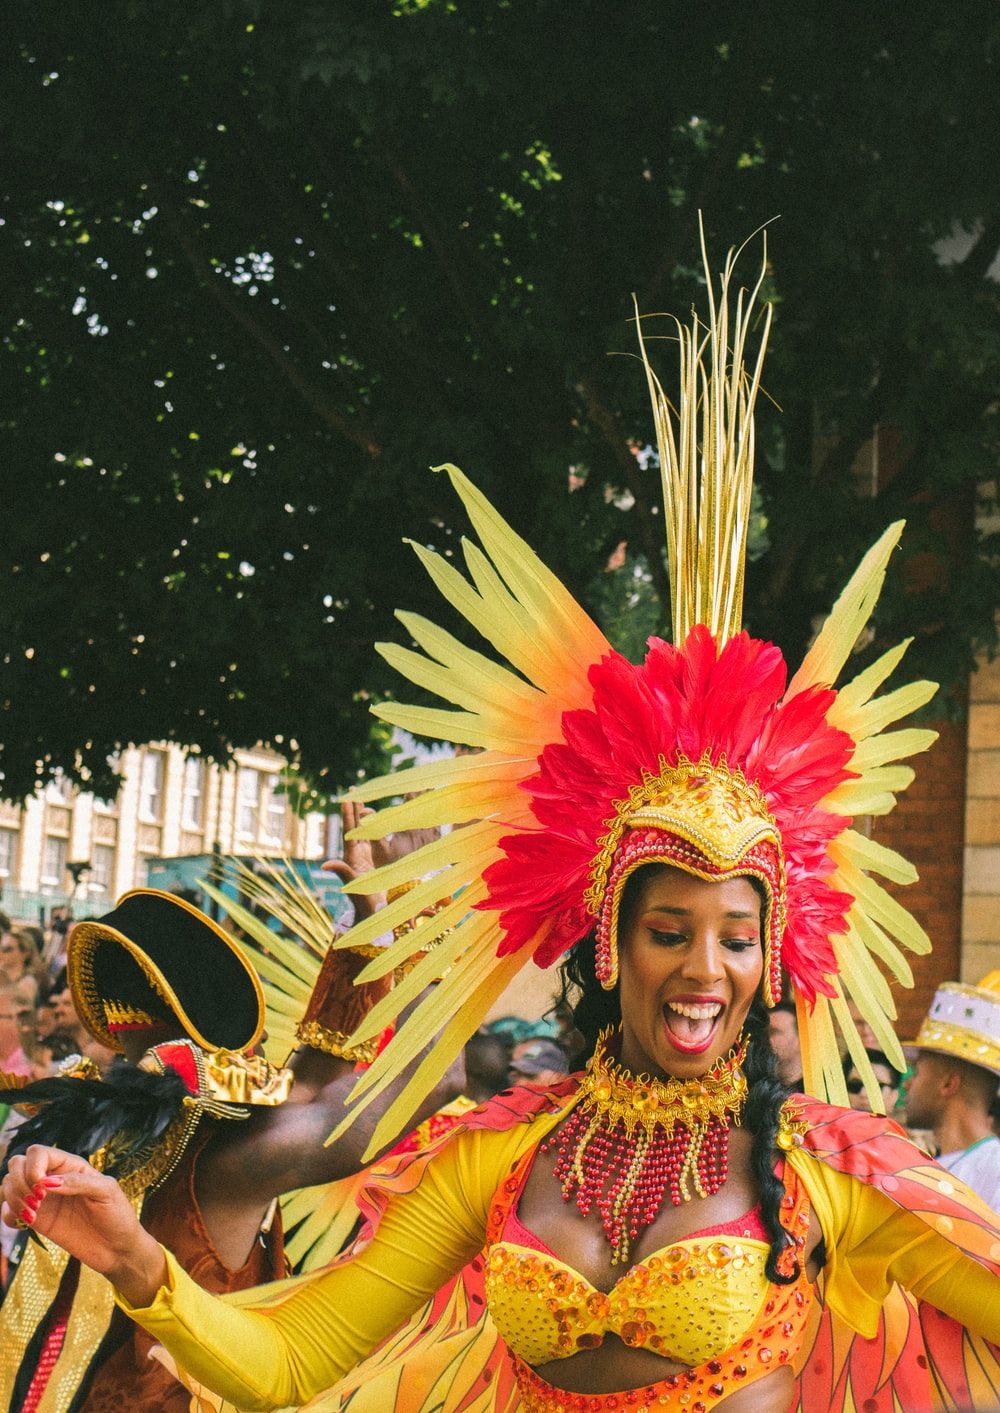 Más de 100 fotos de Carnaval | Descargar imágenes gratis